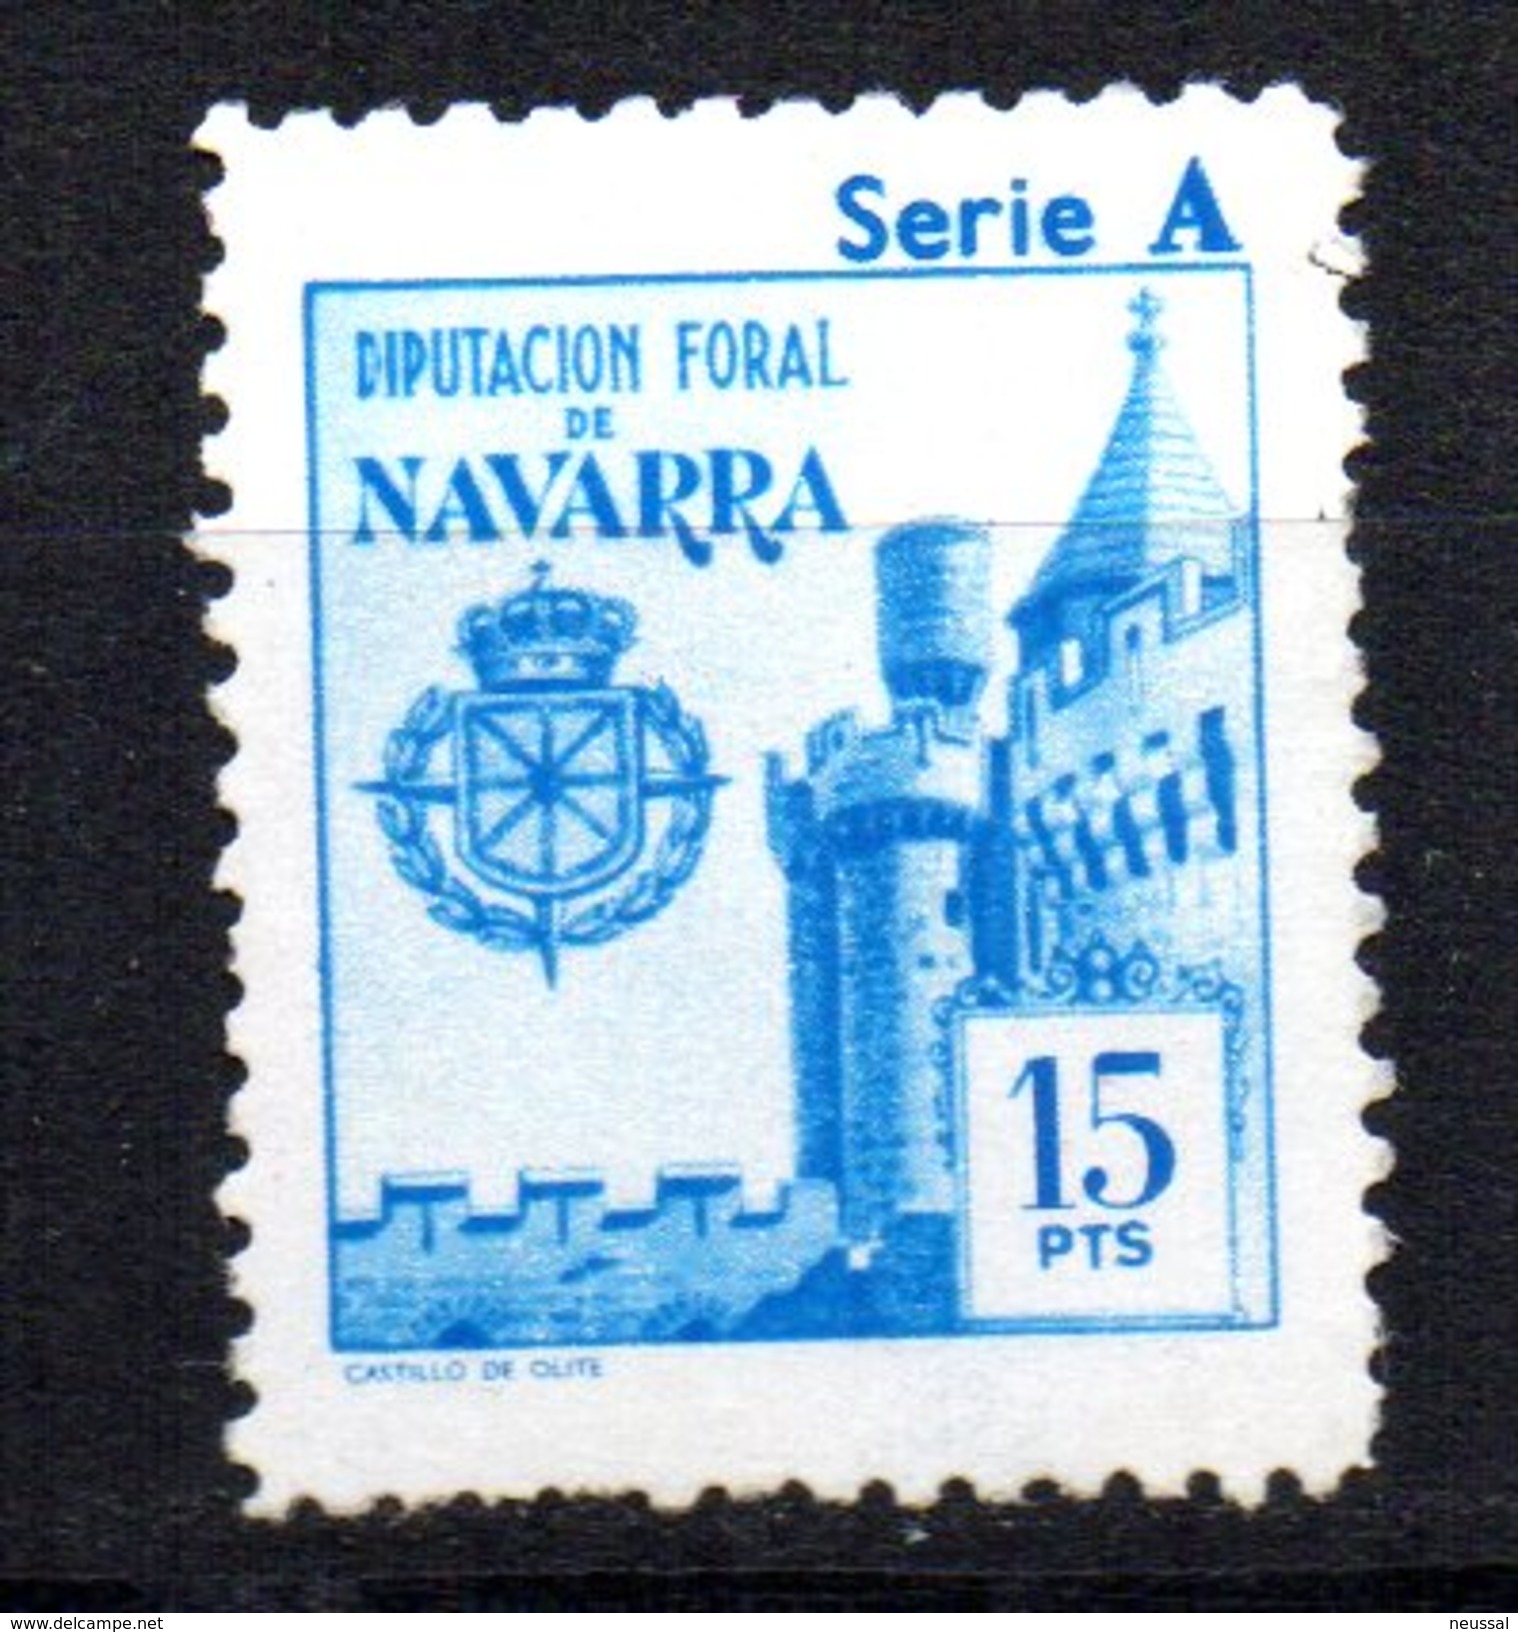 Sello Fiscal De Navarra Nº 368 - Fiscales